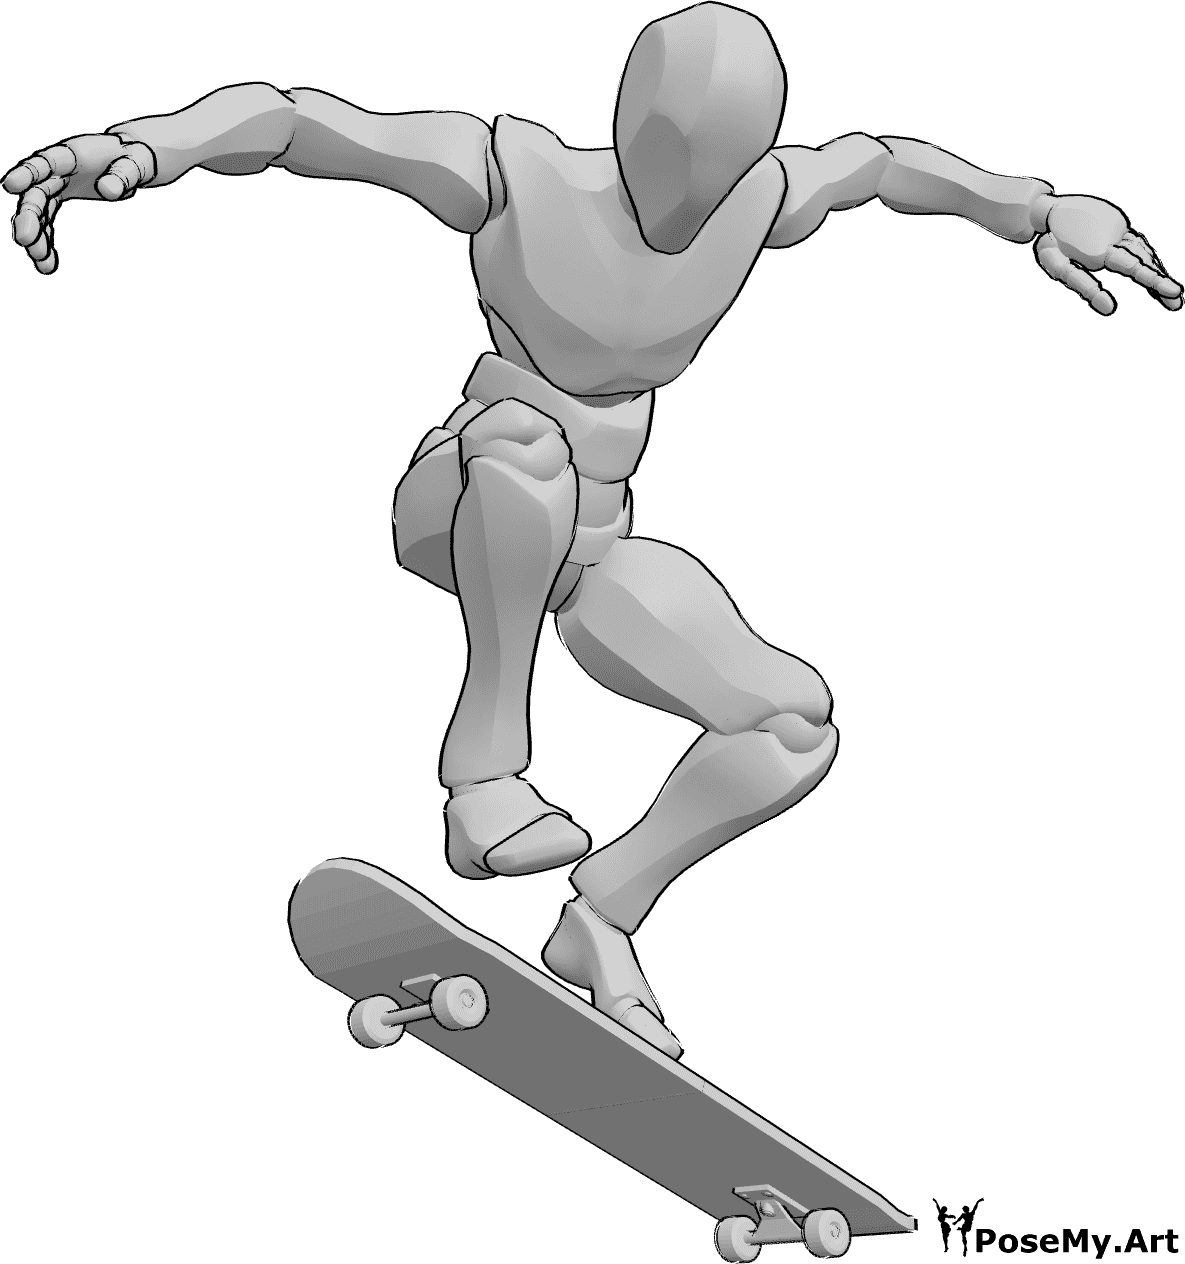 Posen-Referenz- Skateboard Kickflip-Pose - Männlich ist skateboarding, macht einen Kickflip in der Luft, Skateboard Zeichnung Referenz